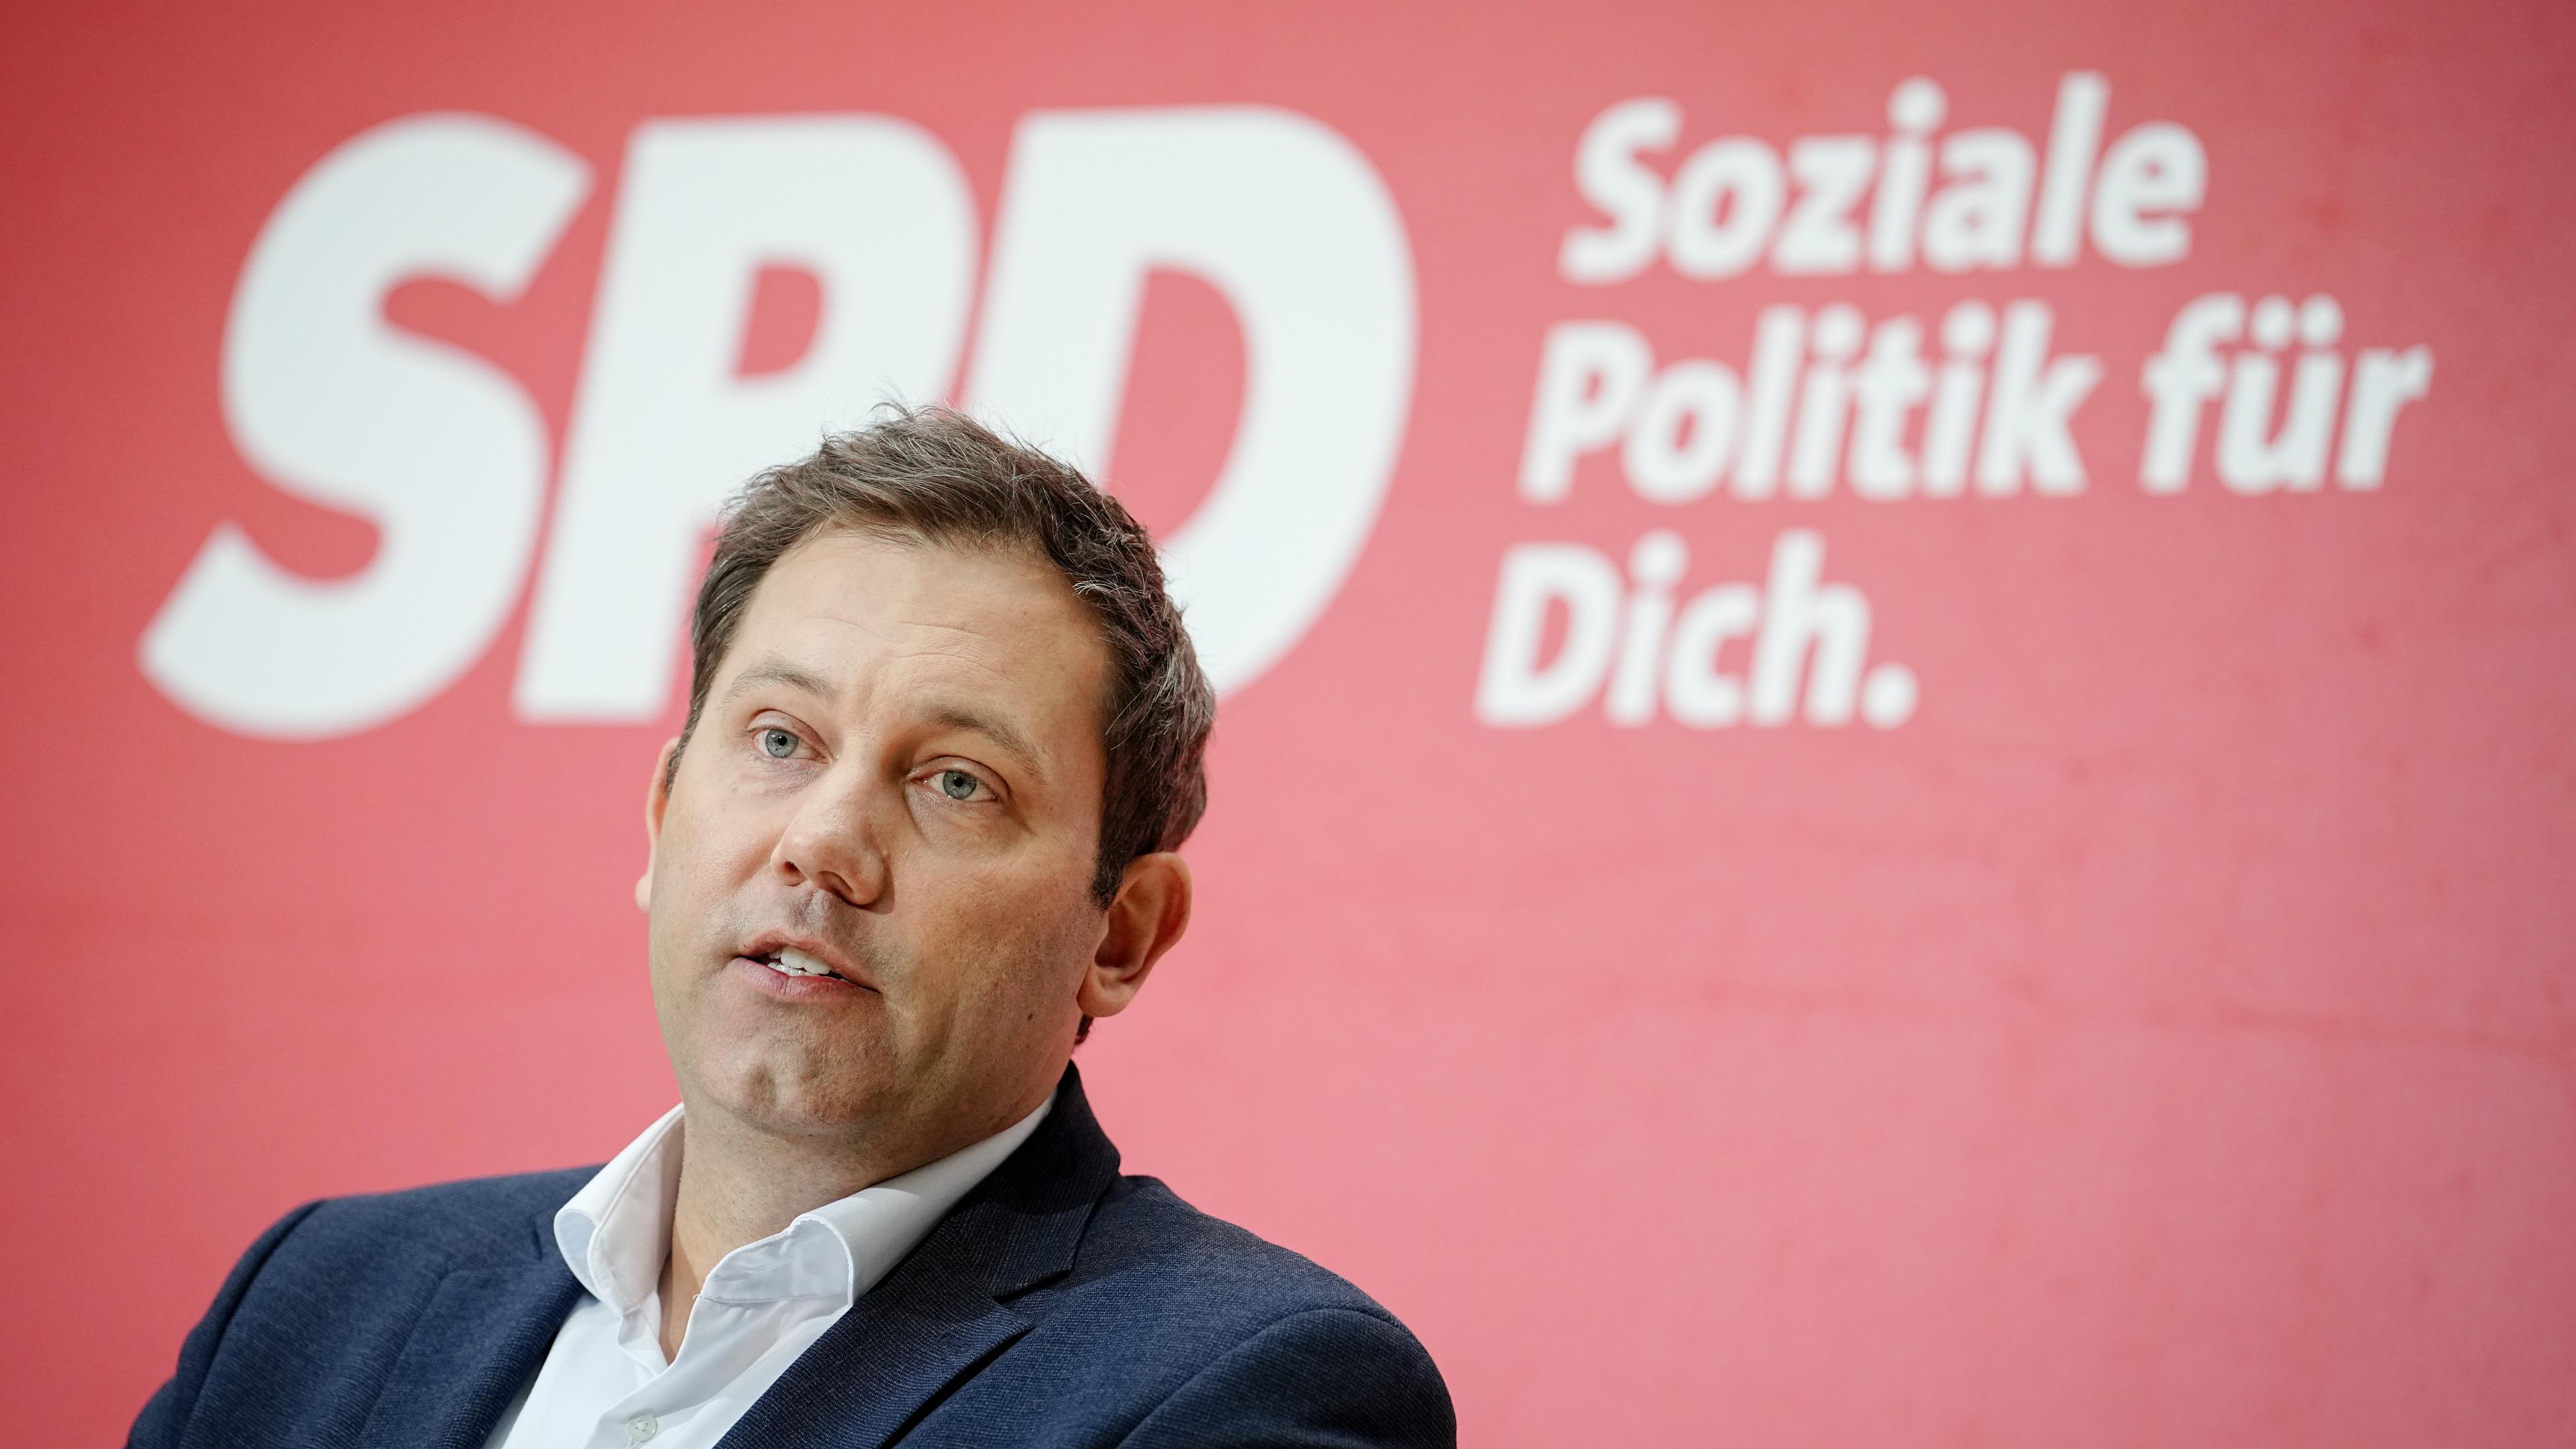 Lars Klingbeil, Bundesvorsitzender der SPD, gibt zum Abschluss der Jahresauftaktklausur des SPD-Präsidiums und Parteivorstands eine Pressekonferenz. 